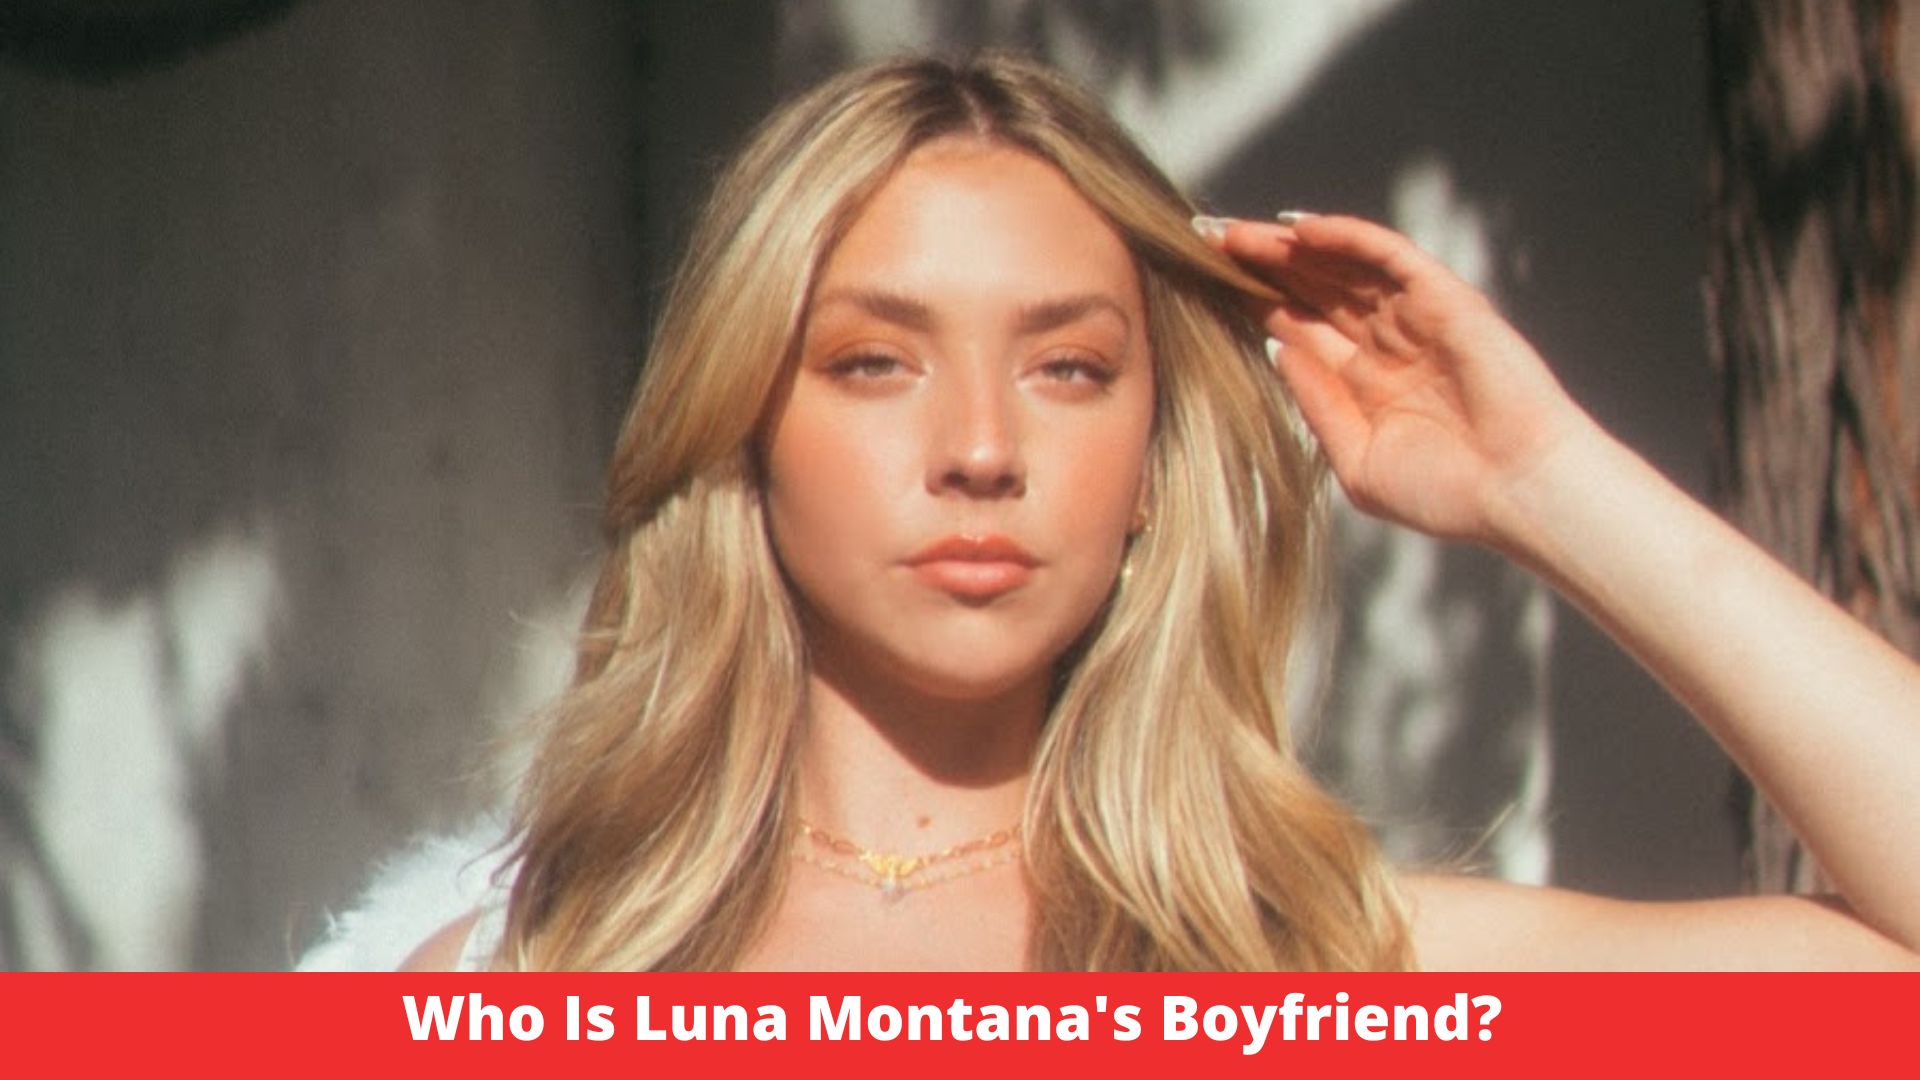 Who Is Luna Montana's Boyfriend?